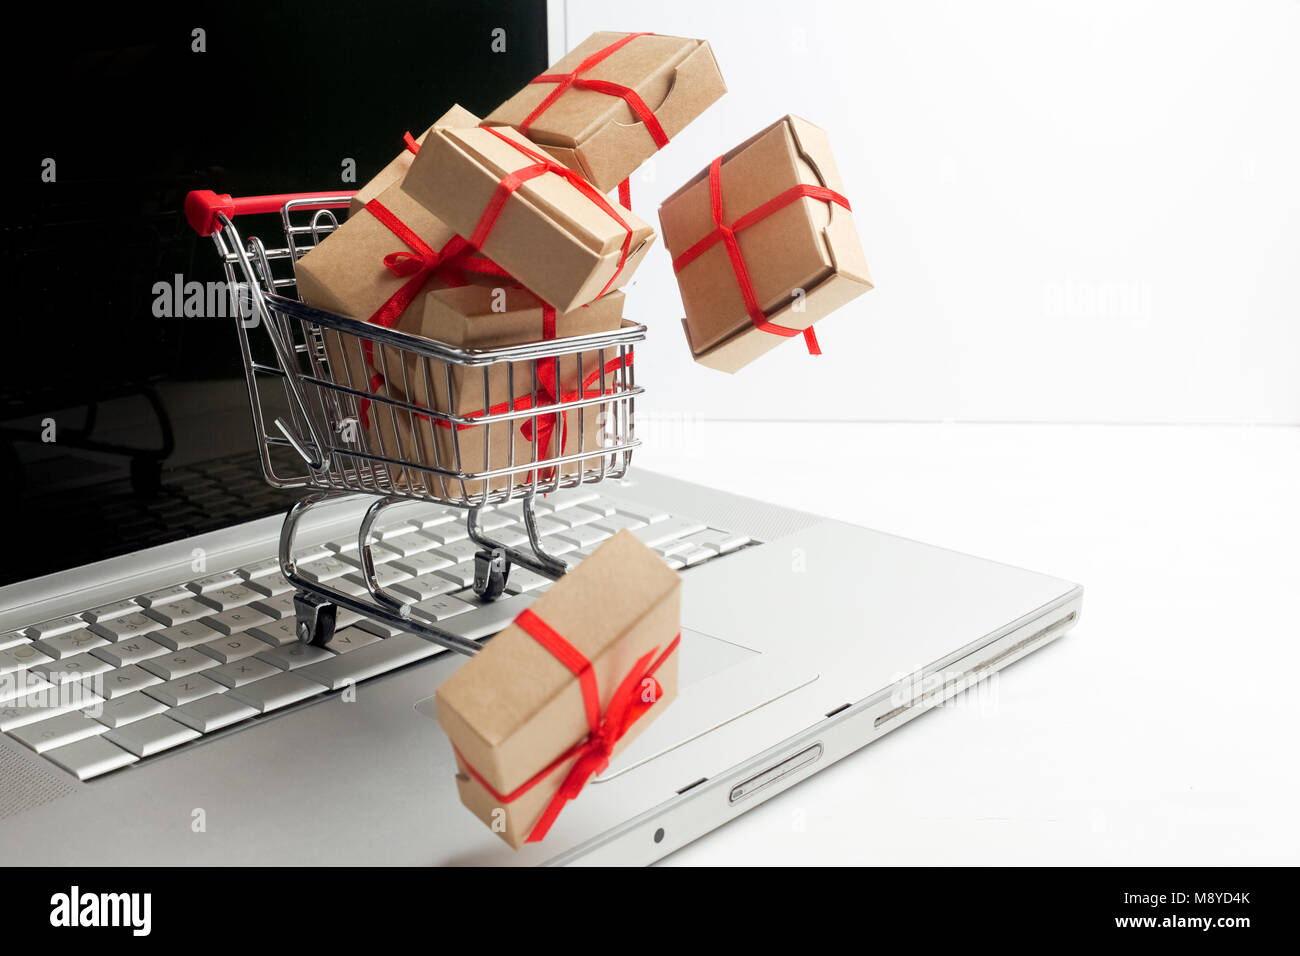 Les boîtes de papier dans un panier sur un clavier d'ordinateur portable. Des idées sur l'e-commerce, une transaction d'achat ou vente de biens. Banque D'Images